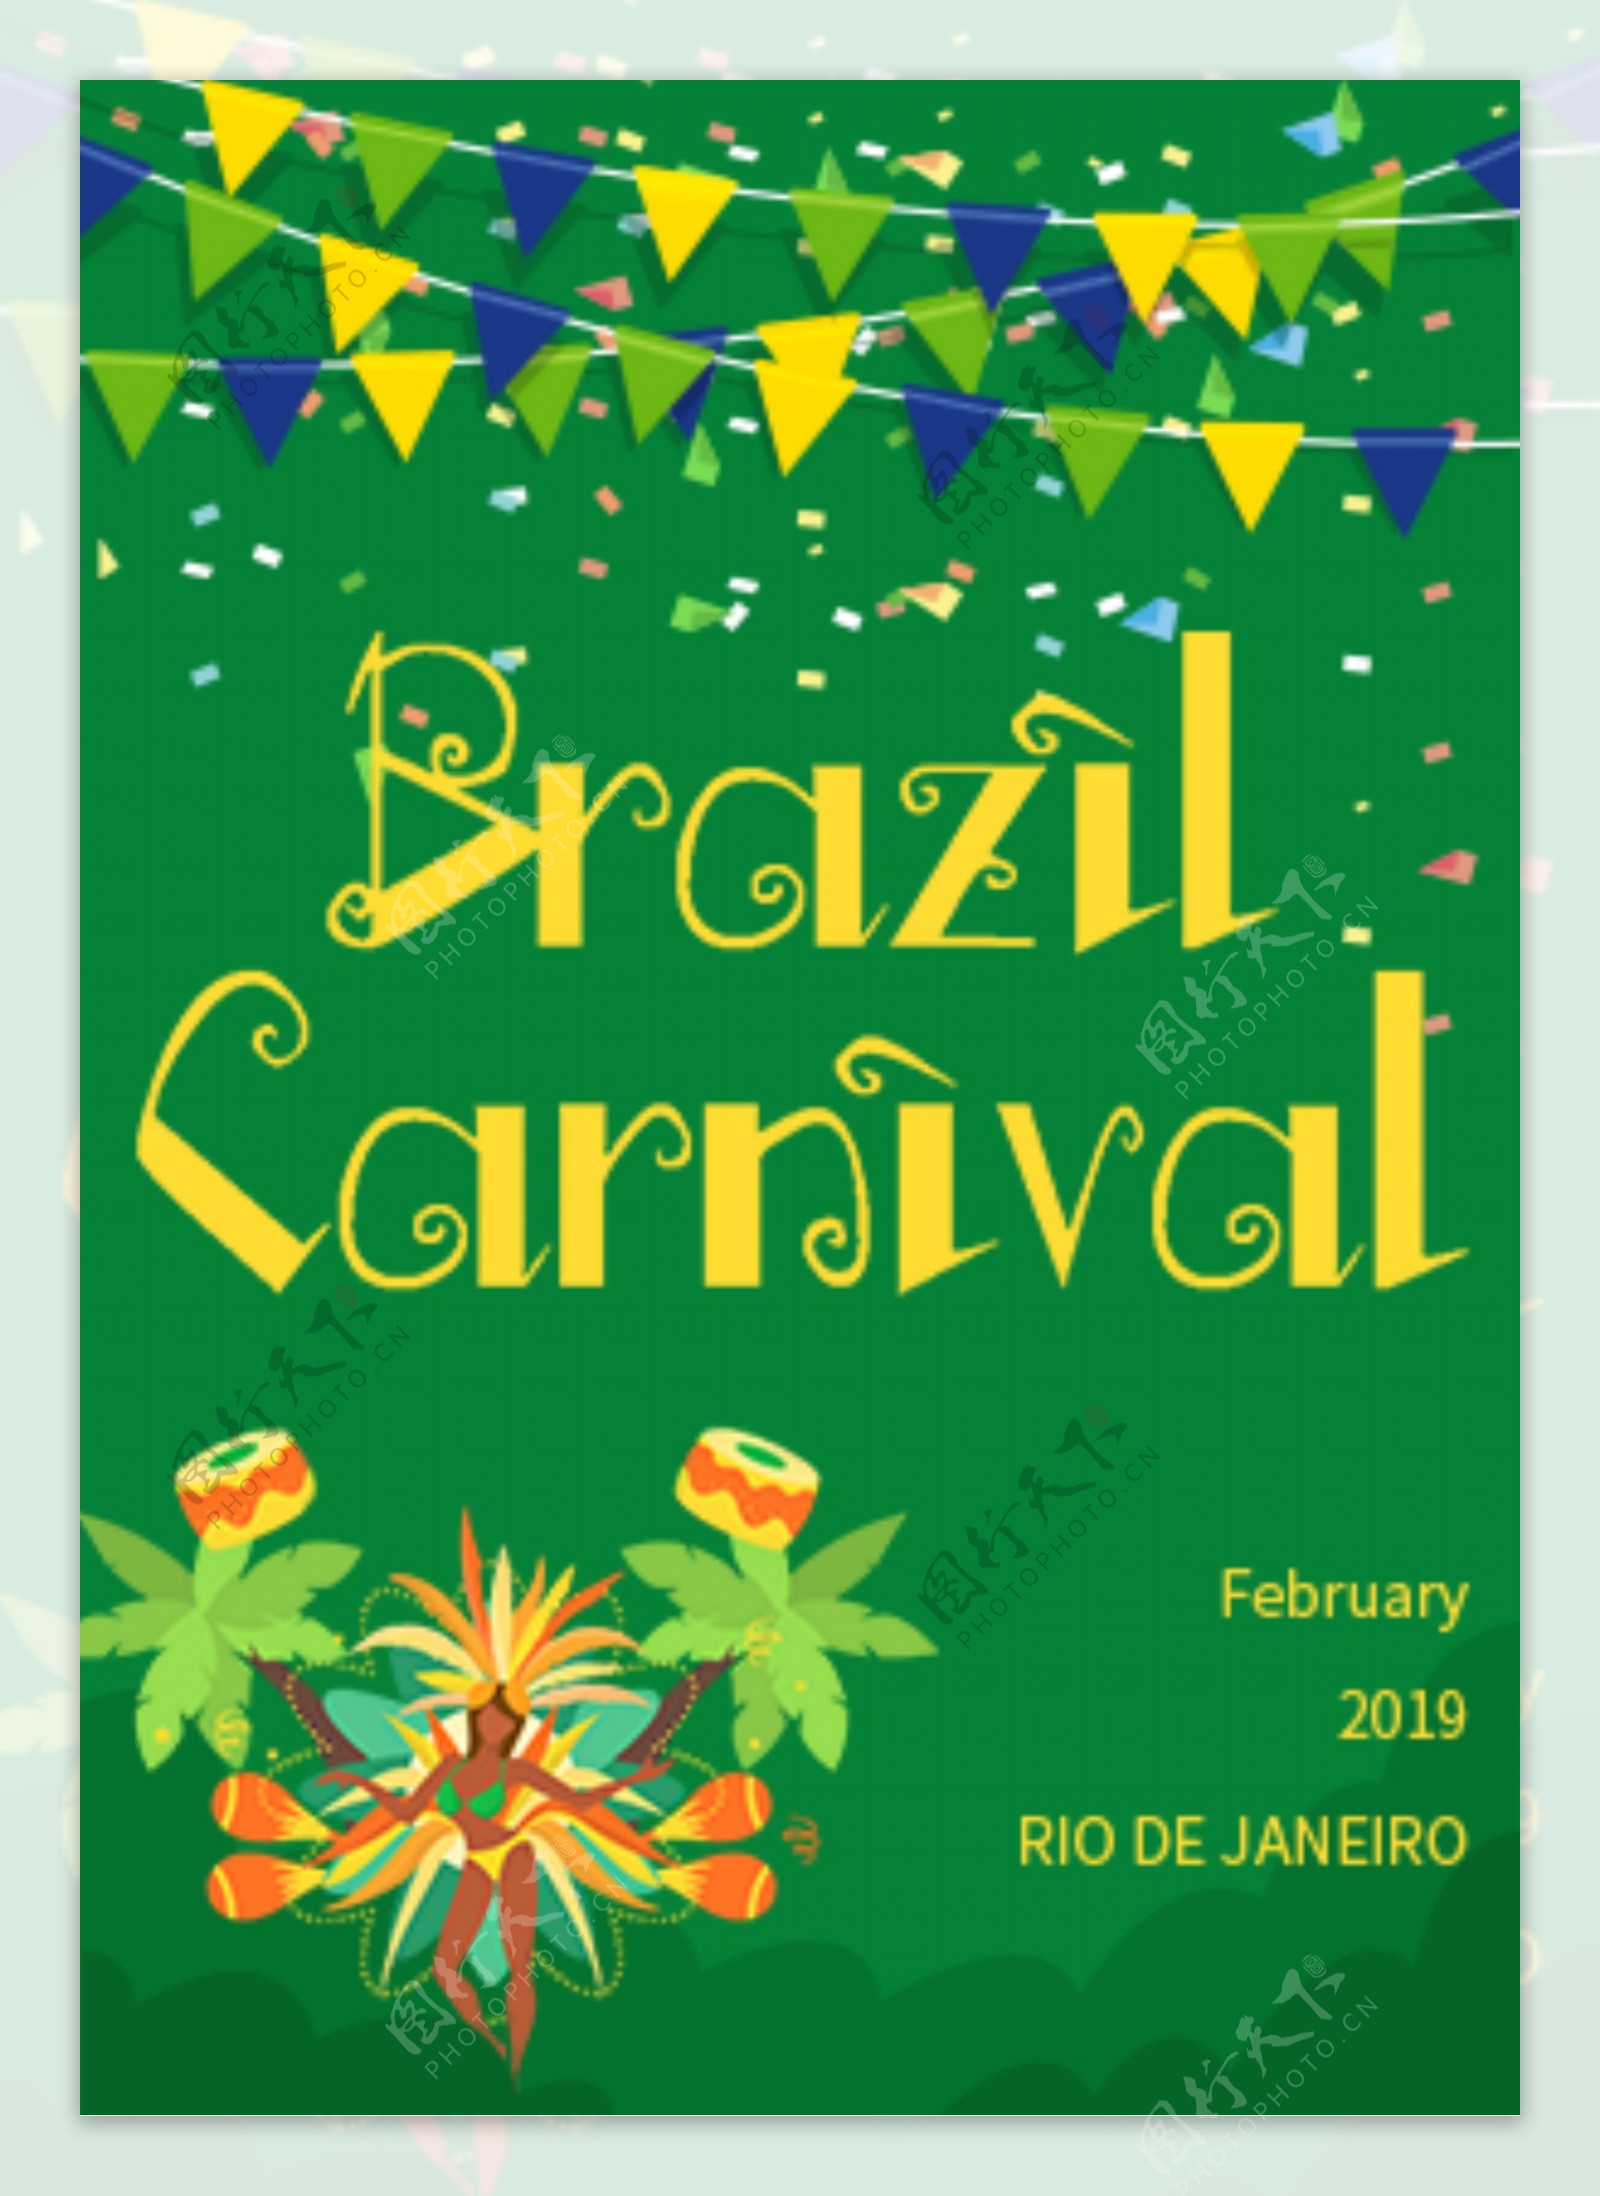 巴西狂欢节的绿色激情平风海报